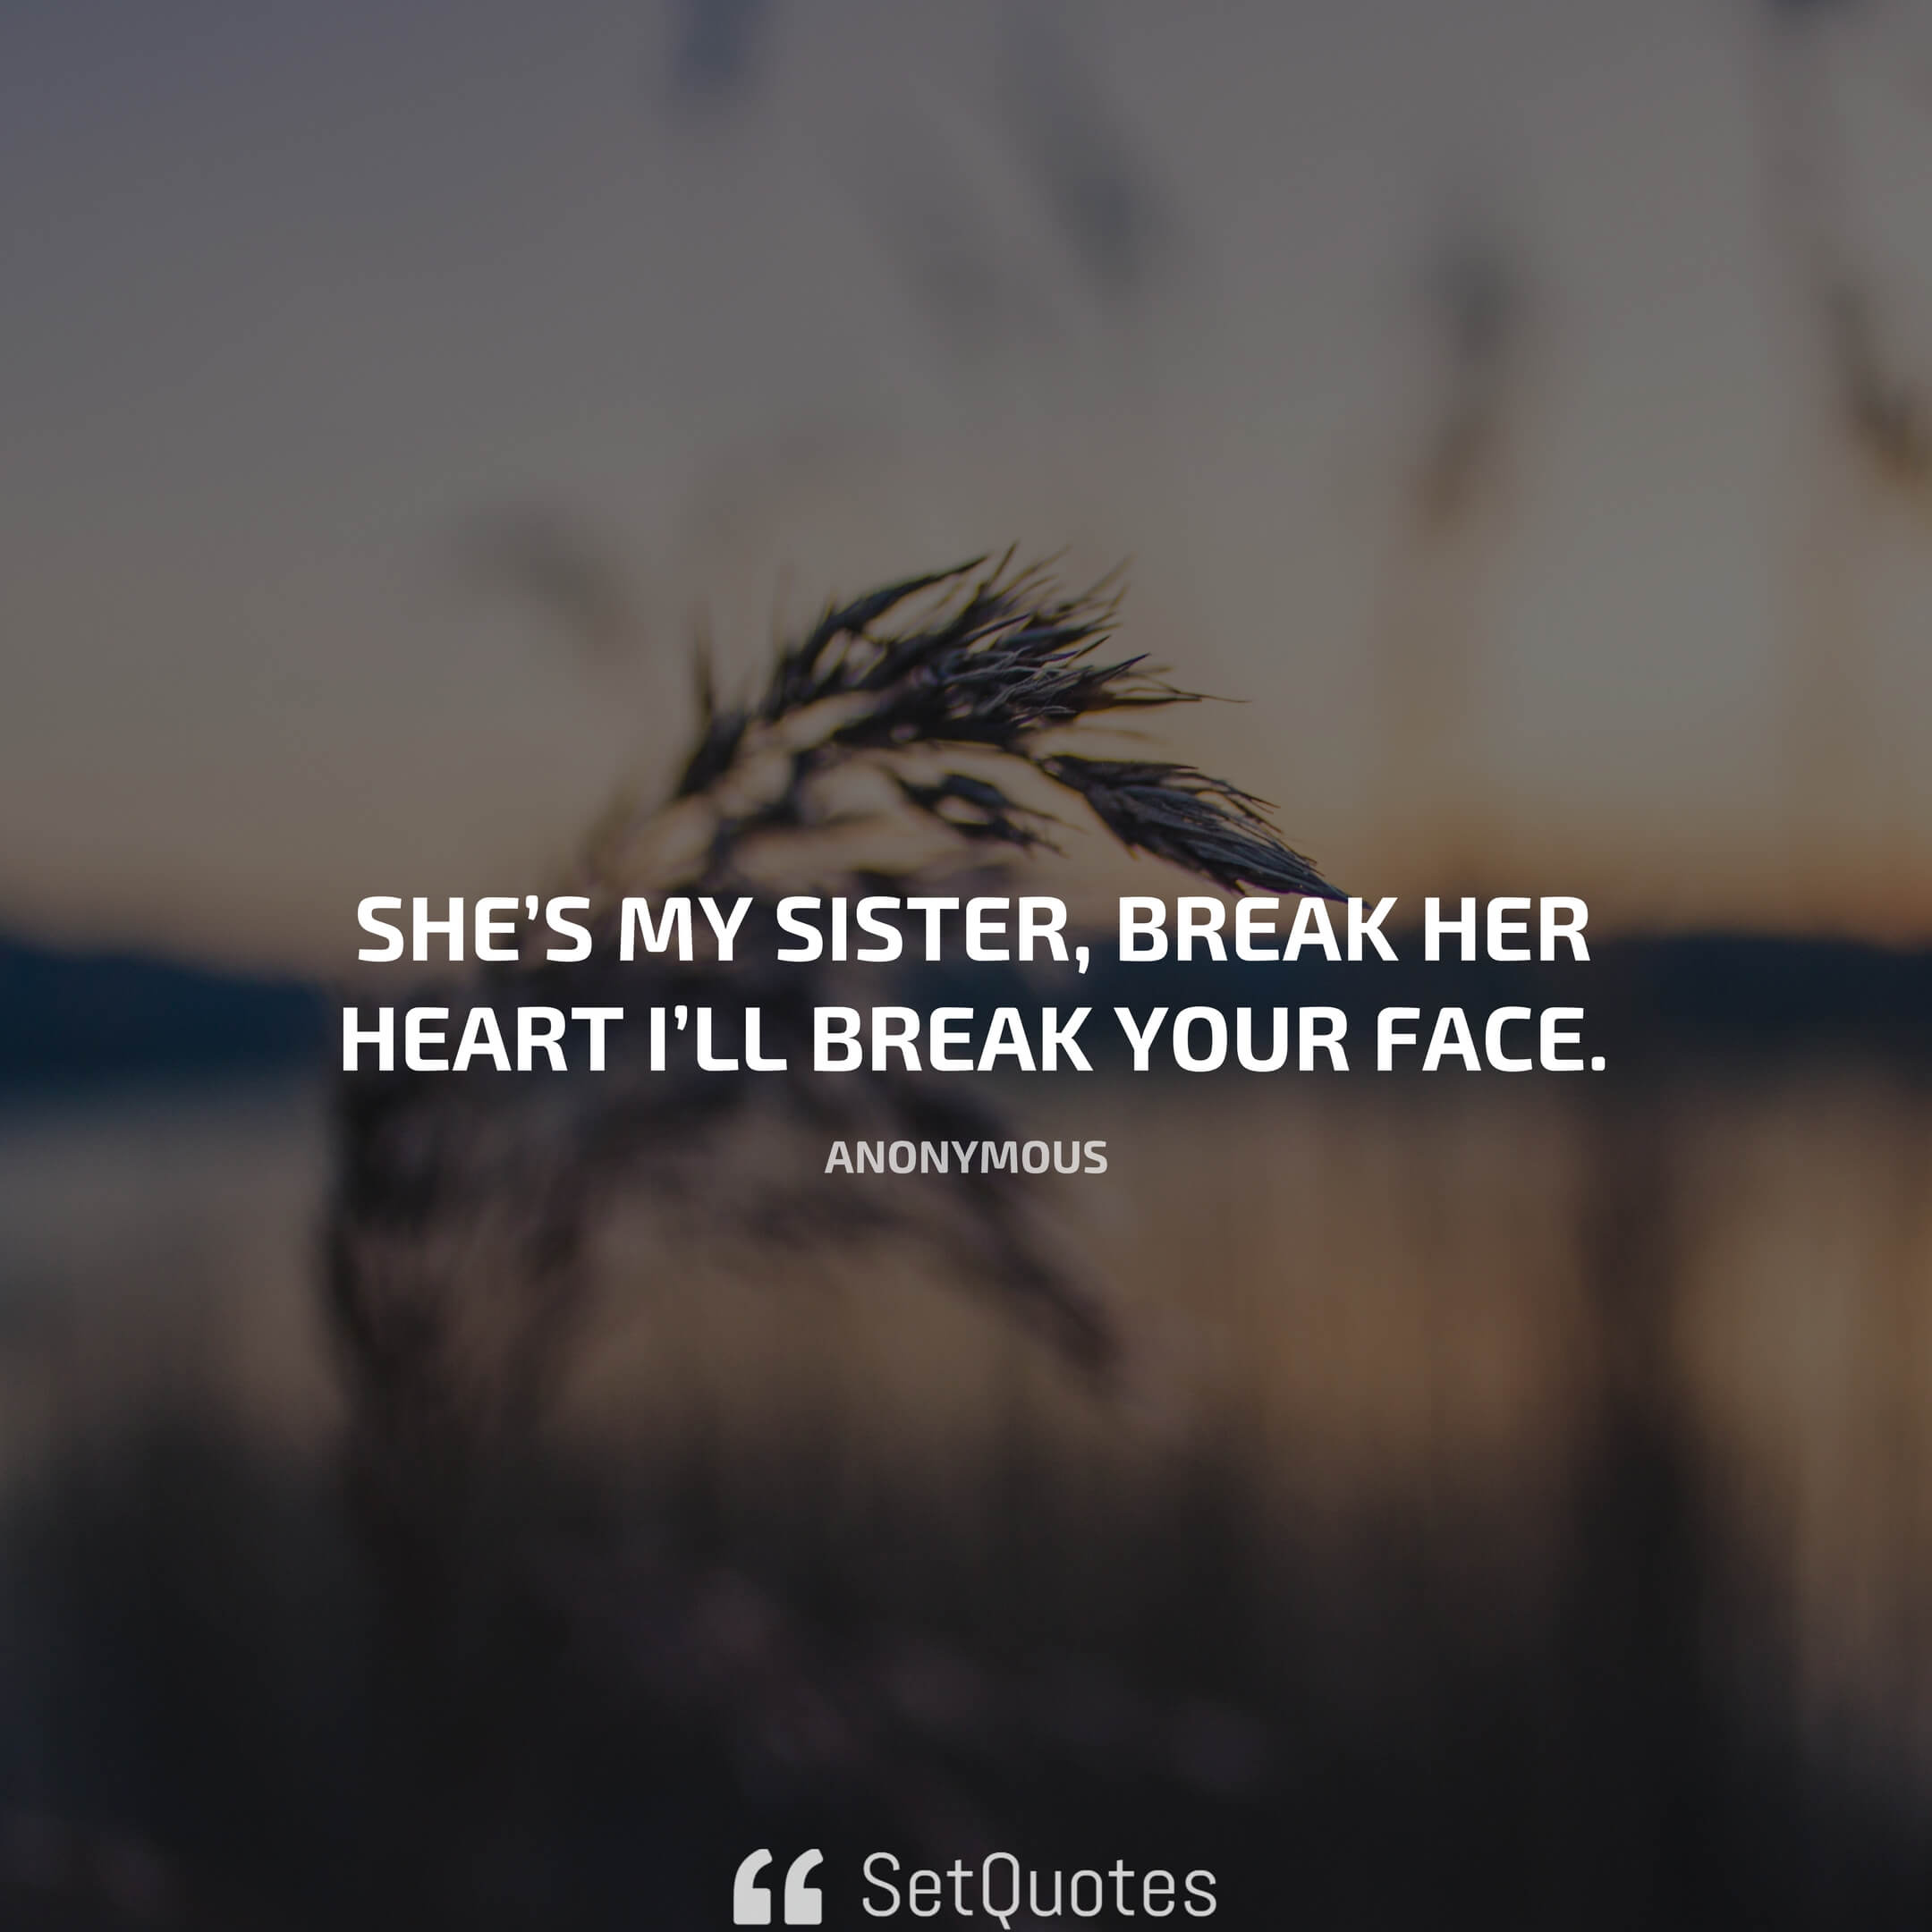 She’s my sister, break her heart i’ll break your face.